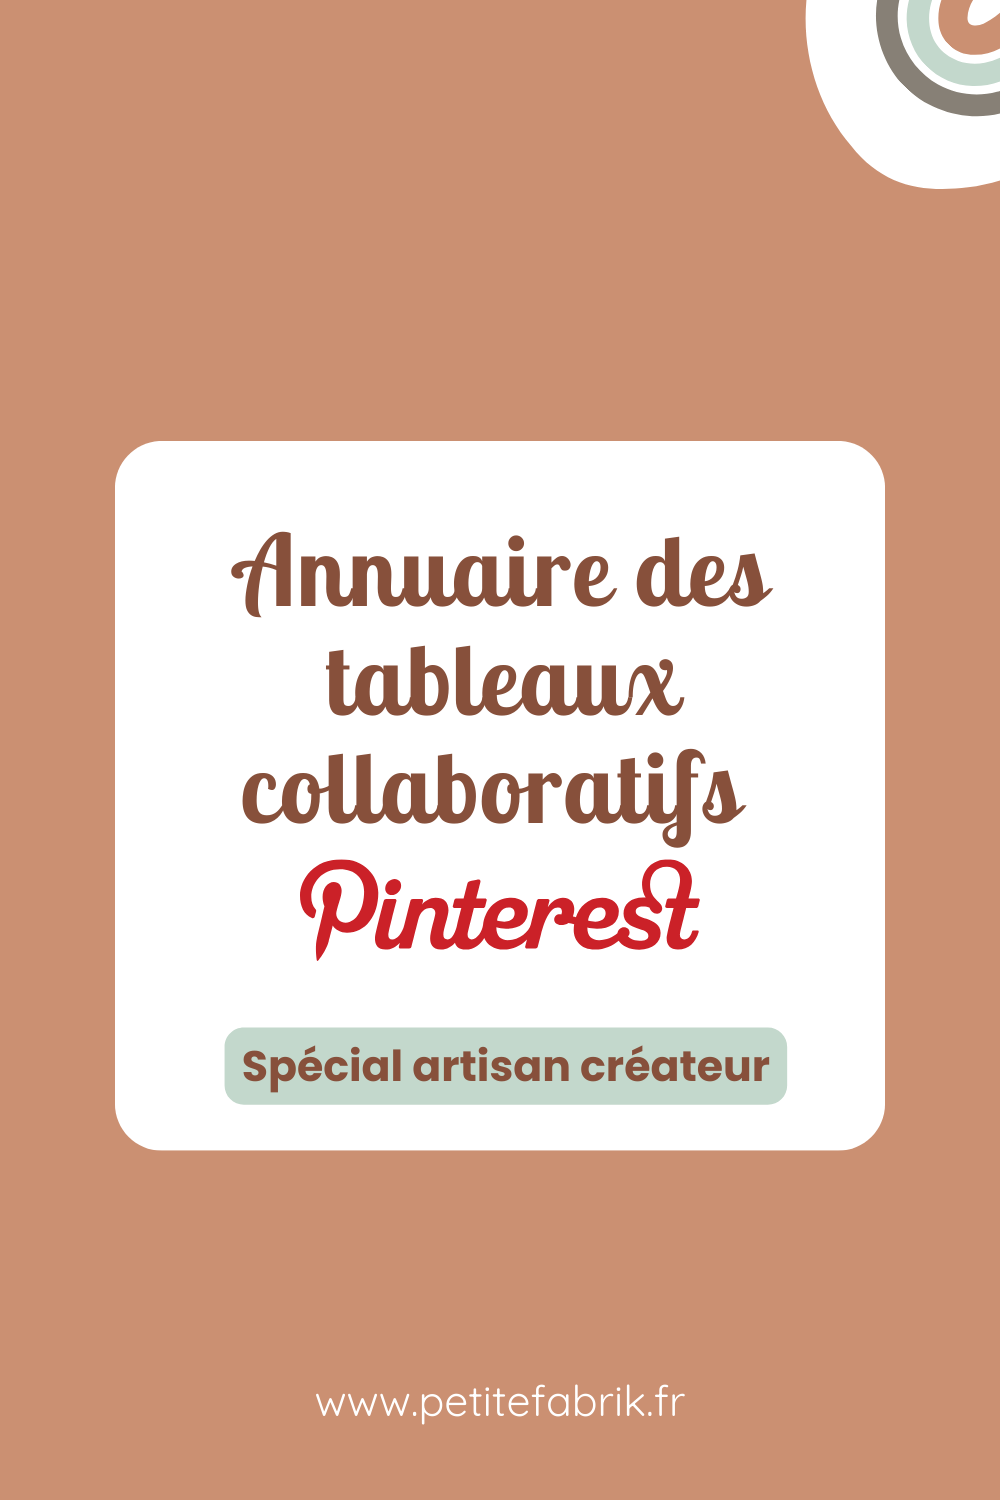 Annuaire des tableaux collaboratifs Pinterest spécial Artisans créateurs